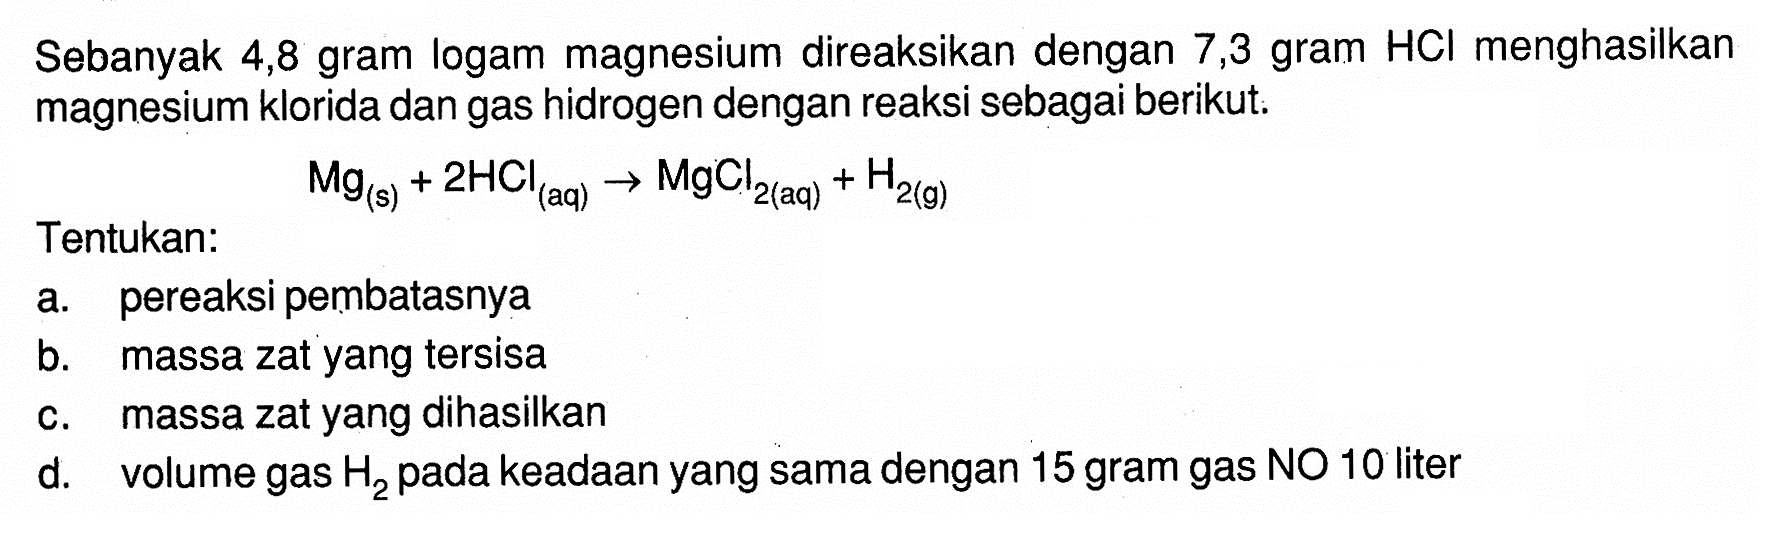 Sebanyak 4,8 gram logam magnesium direaksikan dengan 7,3 gram HCl menghasilkan magnesium klorida dan gas hidrogen dengan reaksi sebagai berikut. Mg(s)+2 HCl(aq) -> MgCl2(aq)+H2(g) Tentukan: a. pereaksi pembatasnya b. massa zat yang tersisa c. massa zat yang dihasilkan d. volume gas H2 pada keadaan yang sama dengan 15 gram gas NO 10 liter